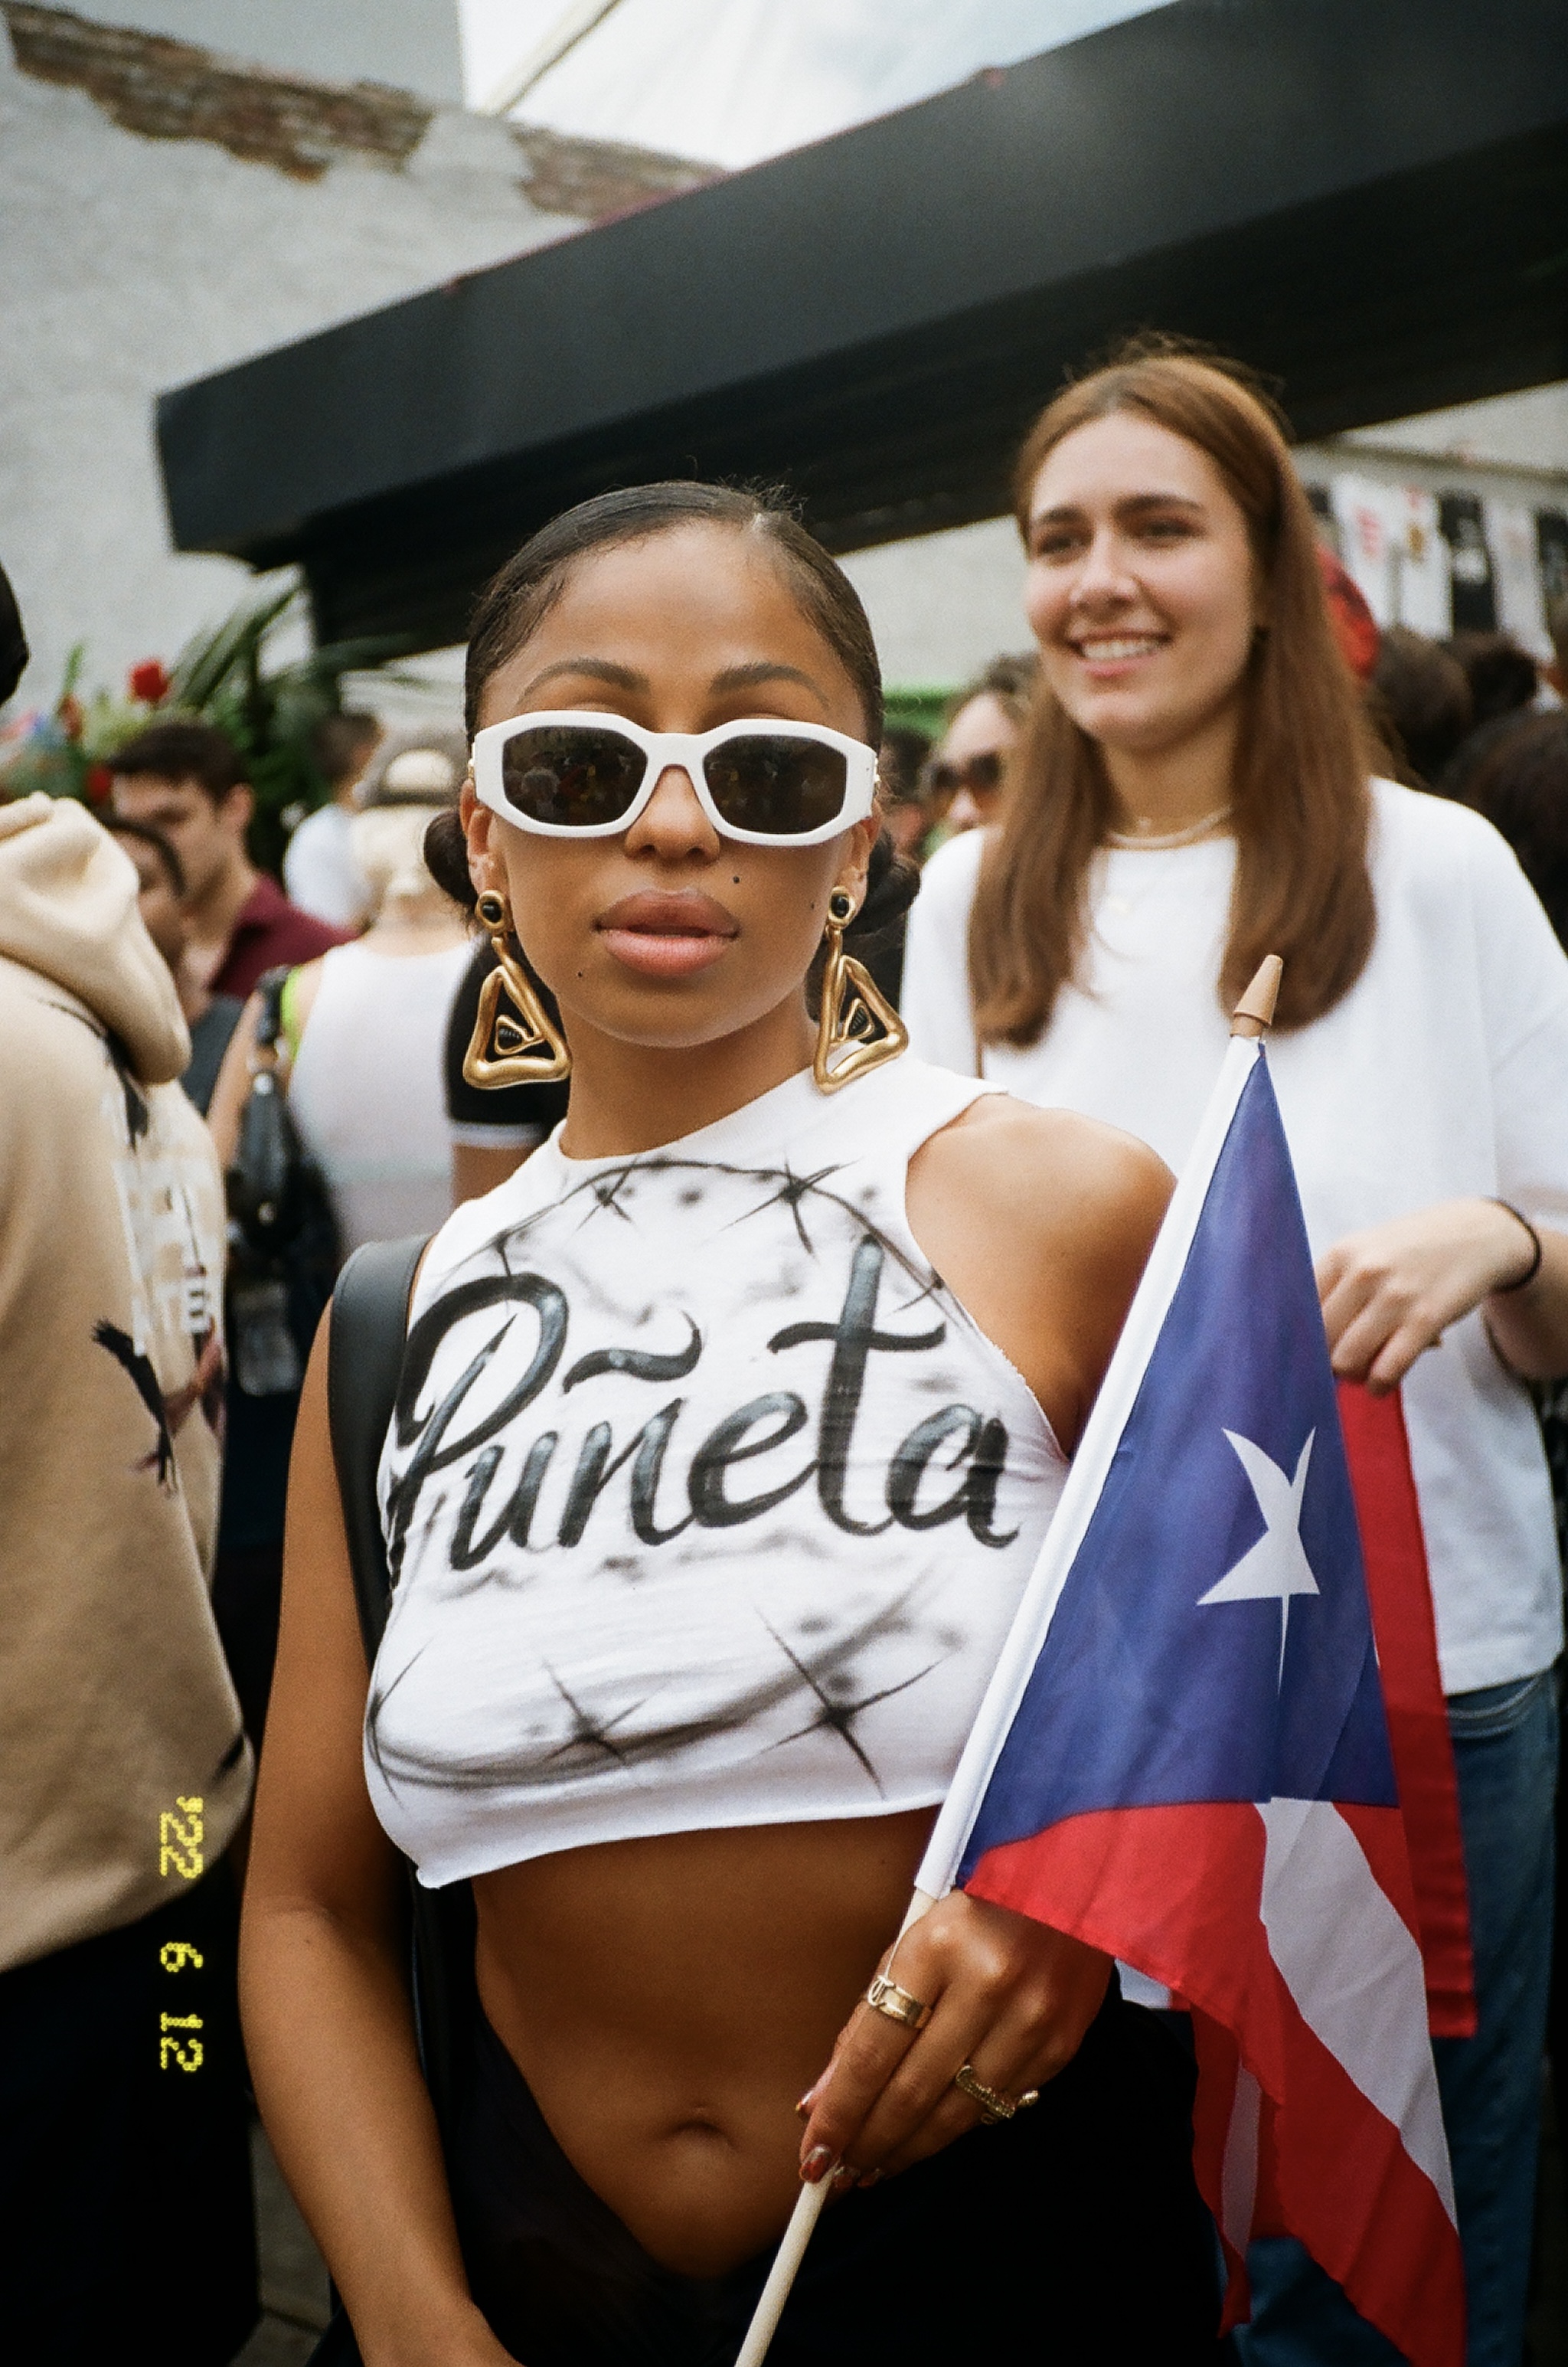 Woman in Bushwick wearing sunglasses, white Puñeta t-shirt, carrying the Puerto Rican flag